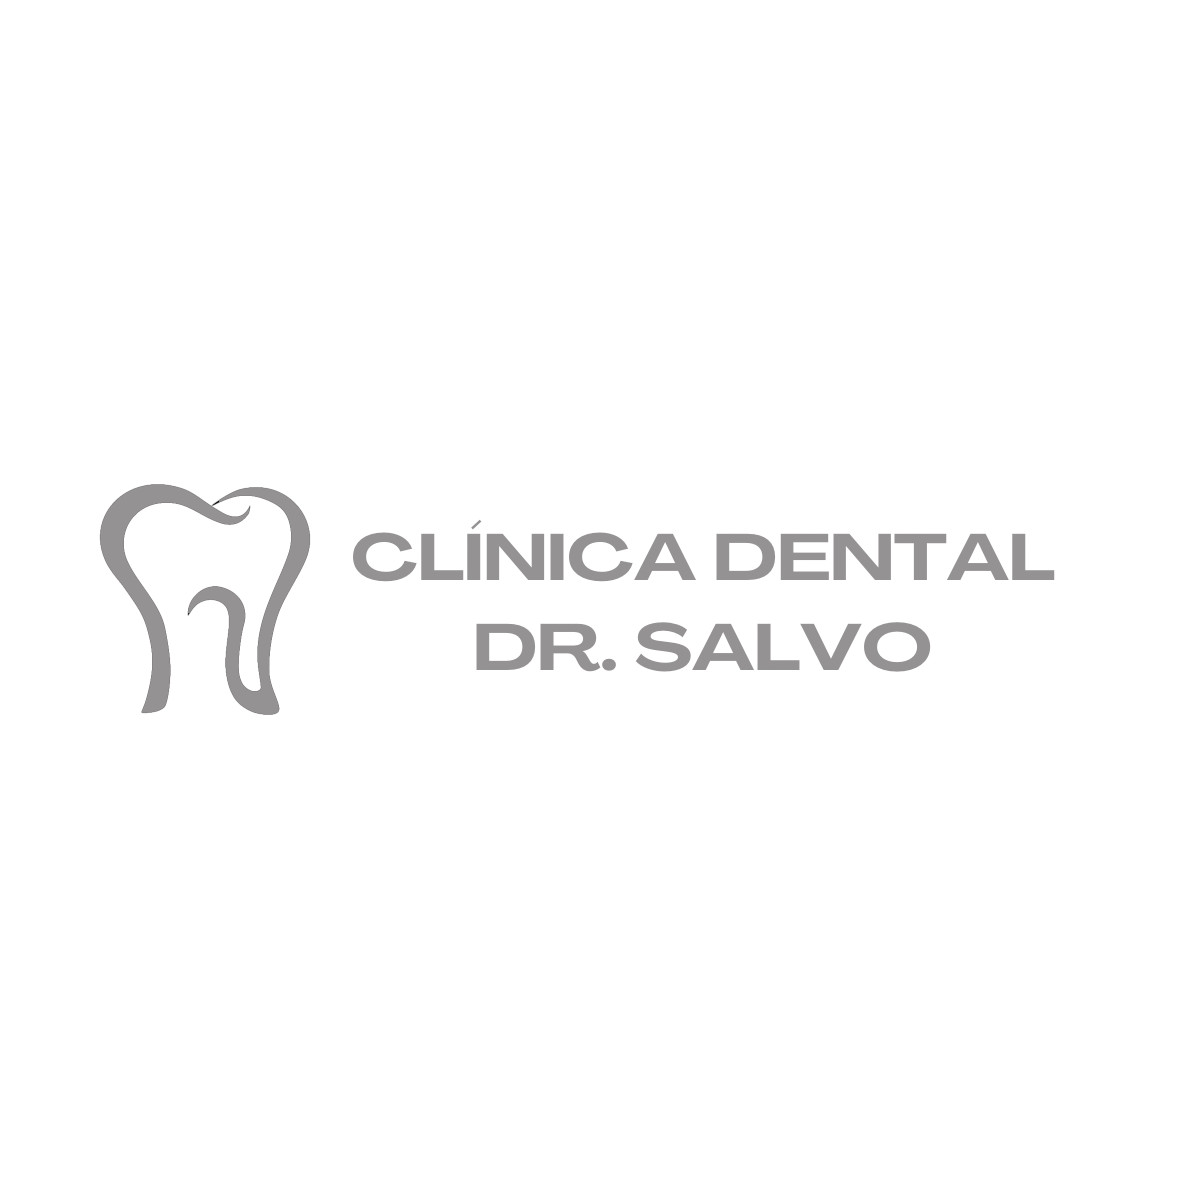 Clínica Dental Salvo | Dentistas Zaragoza